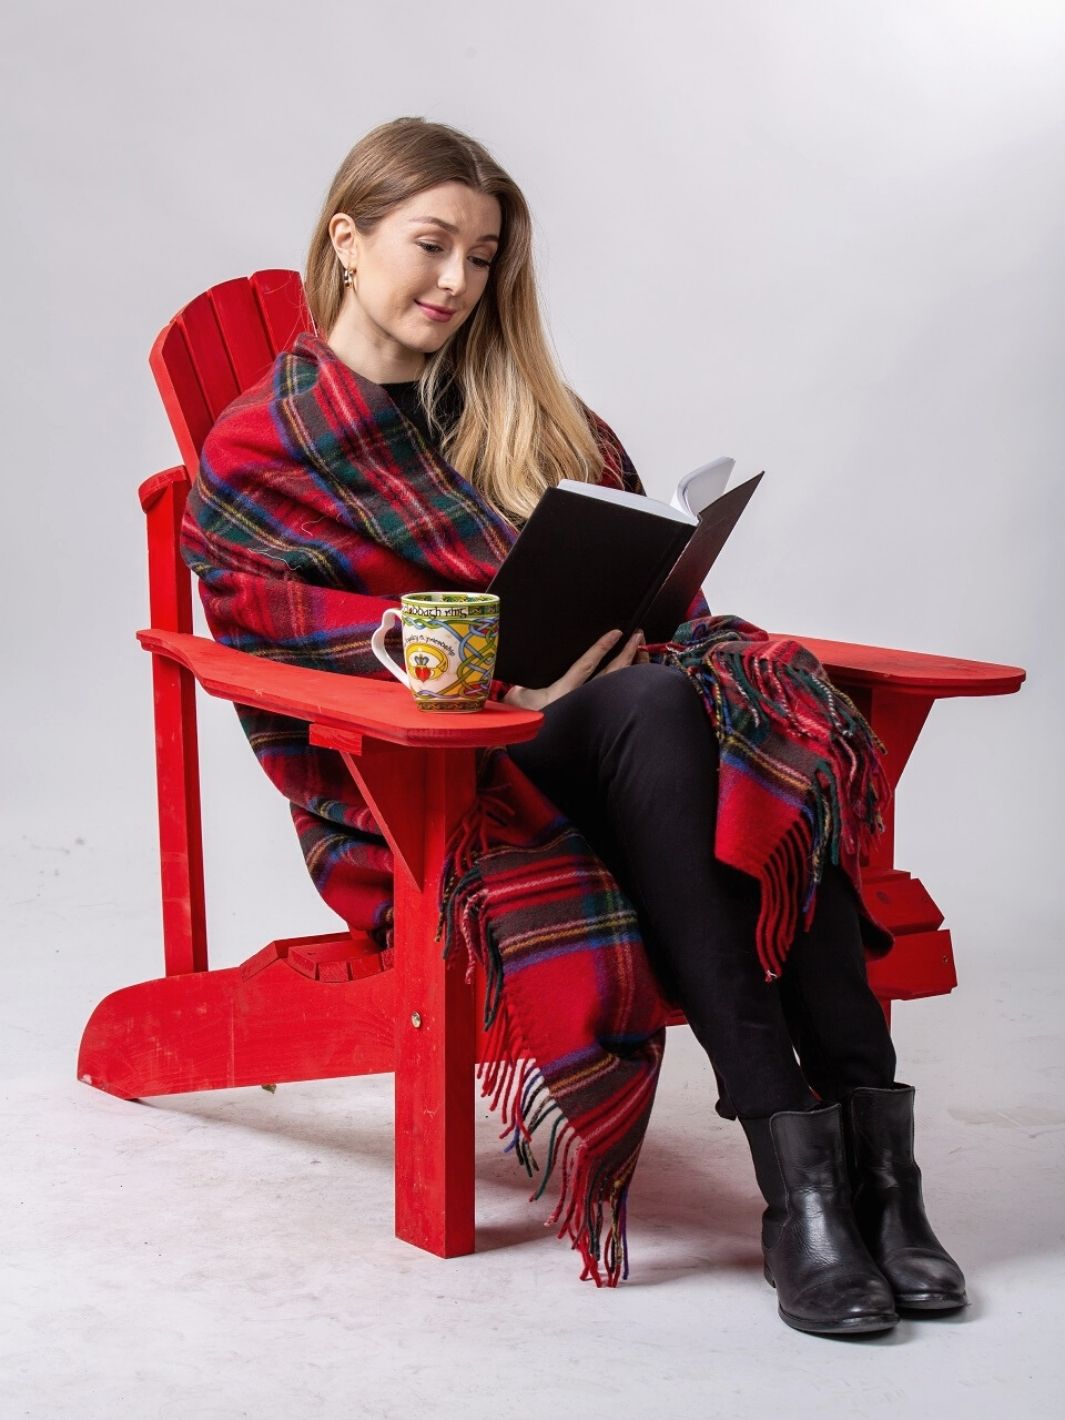 Lourde couverture tartan Highland Collection rouge avec lignes vertes,blanches, noires et bleues sur une femme lisant un livre sur une chaise rouge avec une tasse jaune